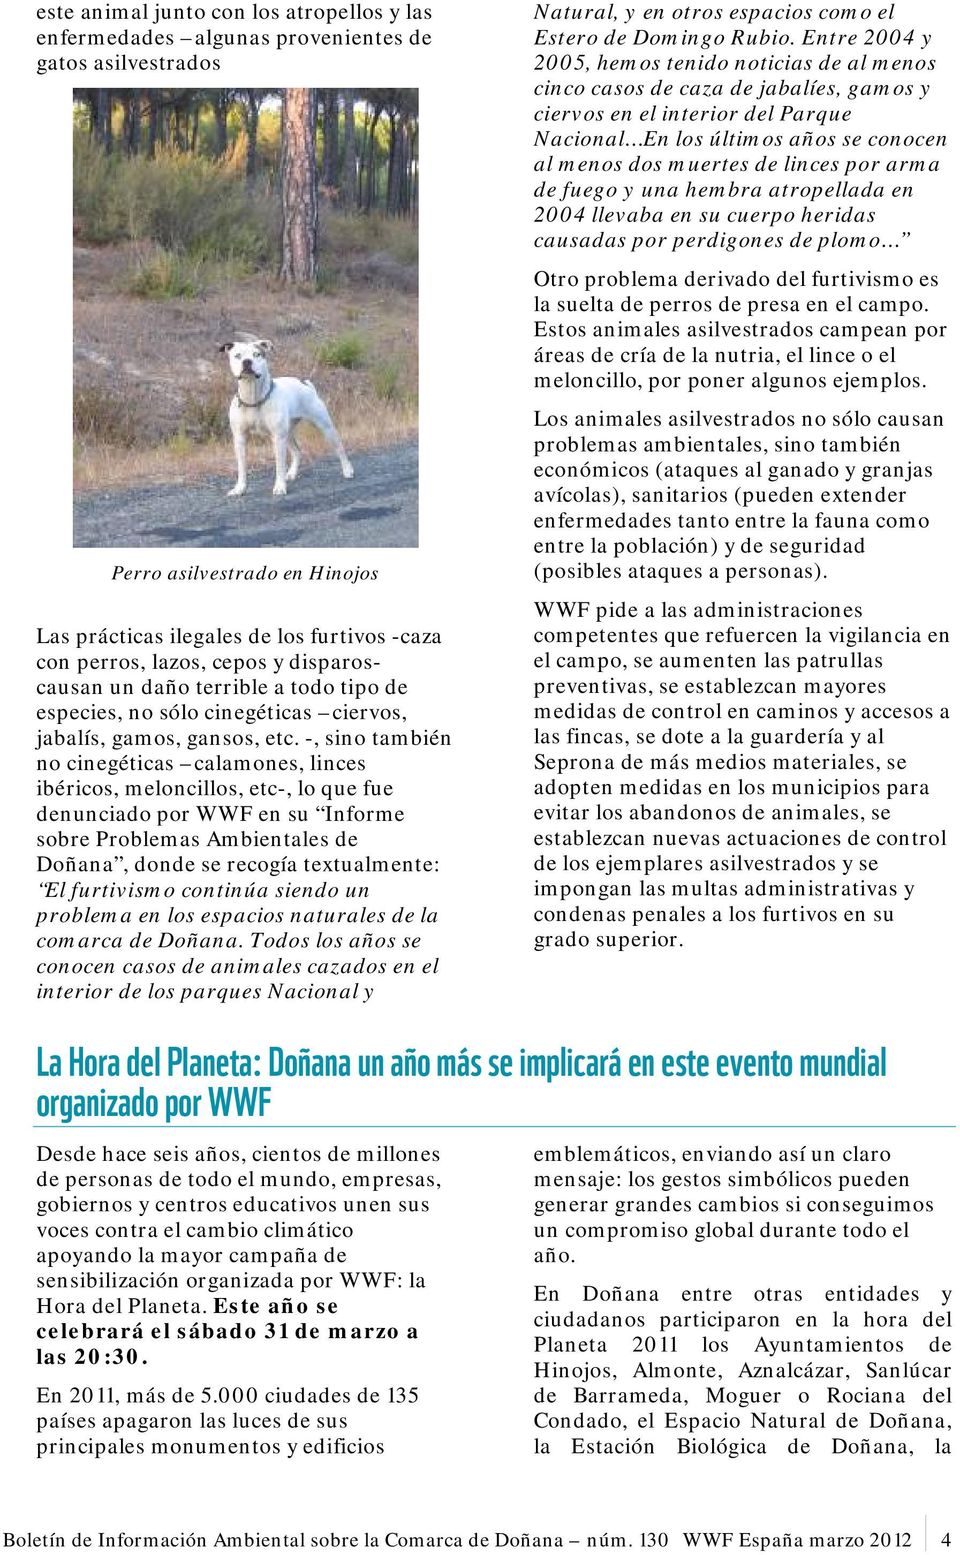 -, sino también no cinegéticas calamones, linces ibéricos, meloncillos, etc-, lo que fue denunciado por WWF en su Informe sobre Problemas Ambientales de Doñana, donde se recogía textualmente: El